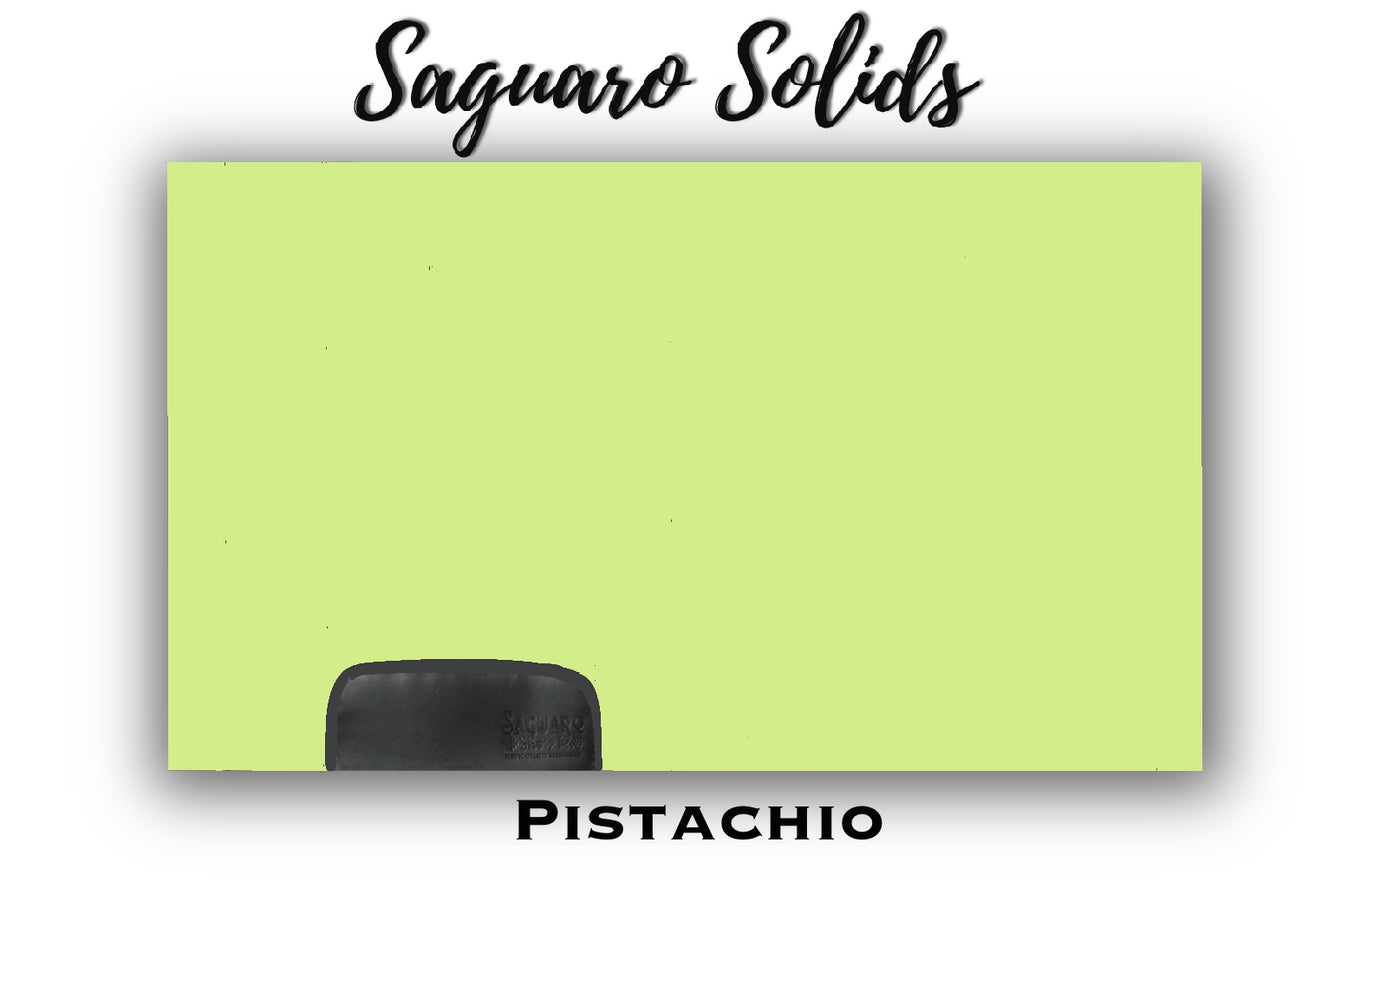 Saguaro Solid "Pistachio" Show Pad (SEMI-CUSTOM)